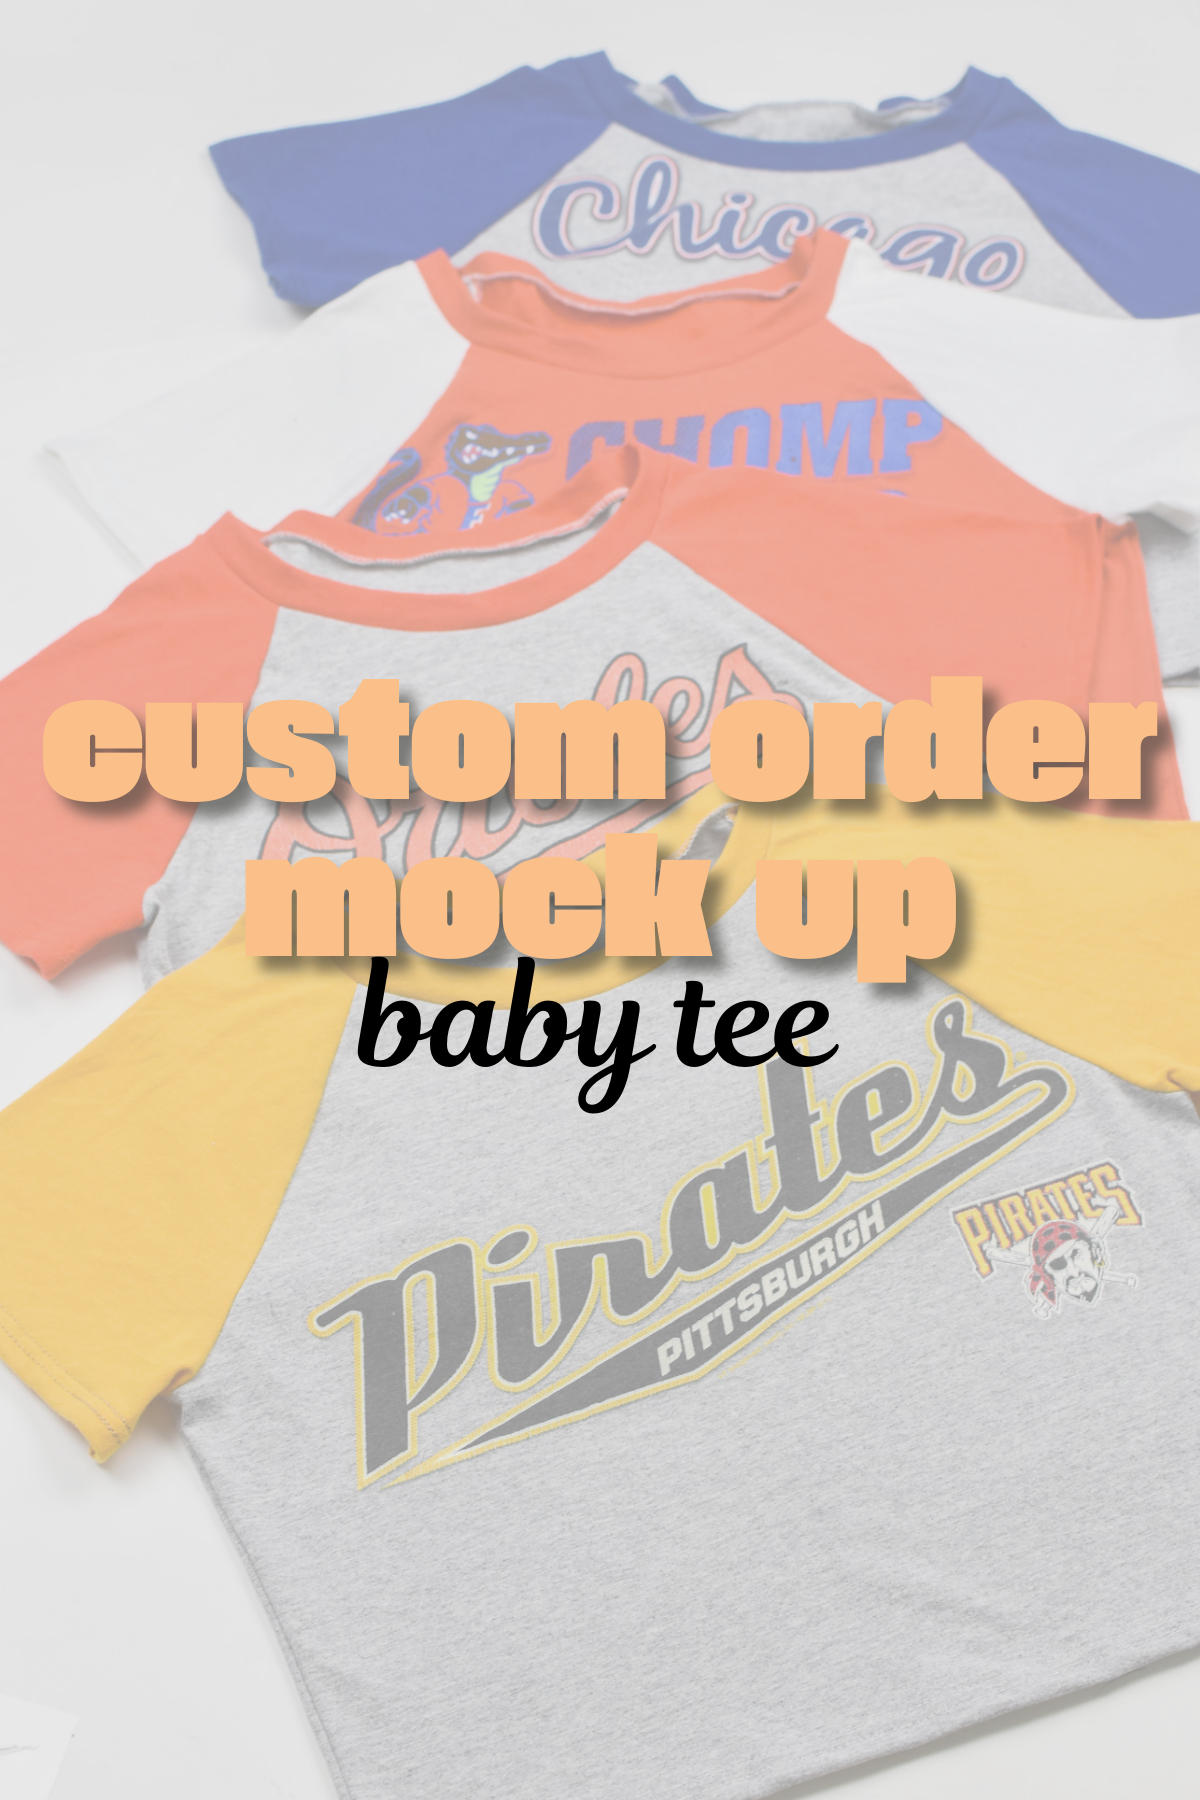 Custom Order Baby Tee Mock Up